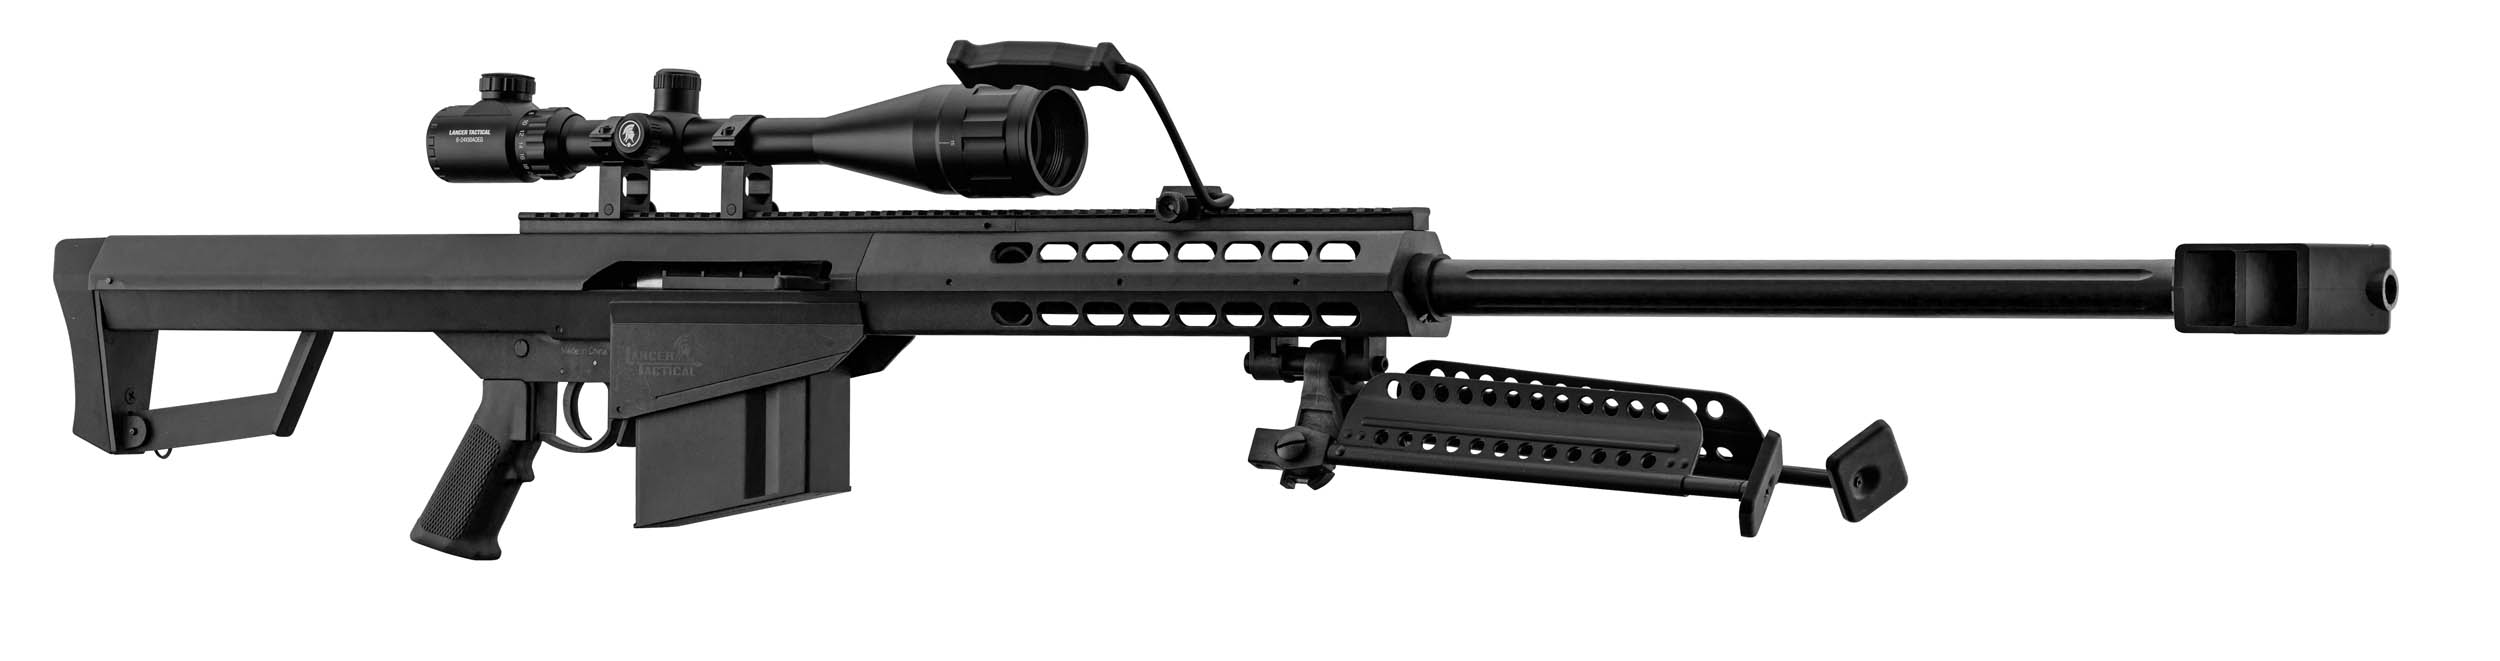 PCKLR3050-04 Pack Sniper LT-20 noir M82 1,5J + lunette + bi-pied + poignée